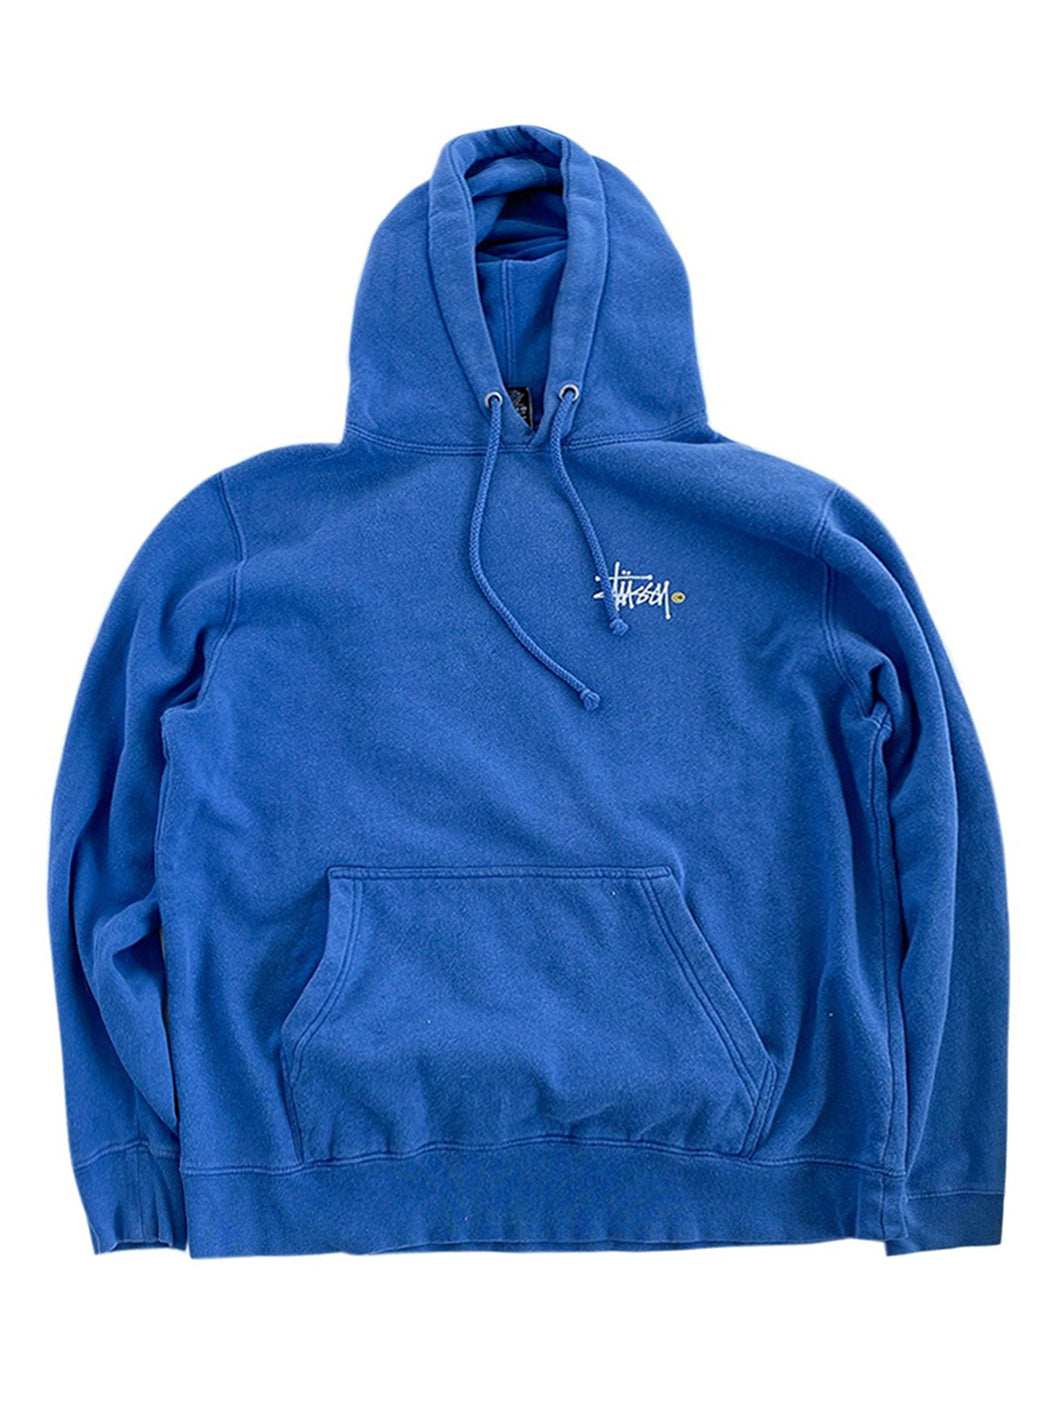 Stussy Blue Hoodie Sweater